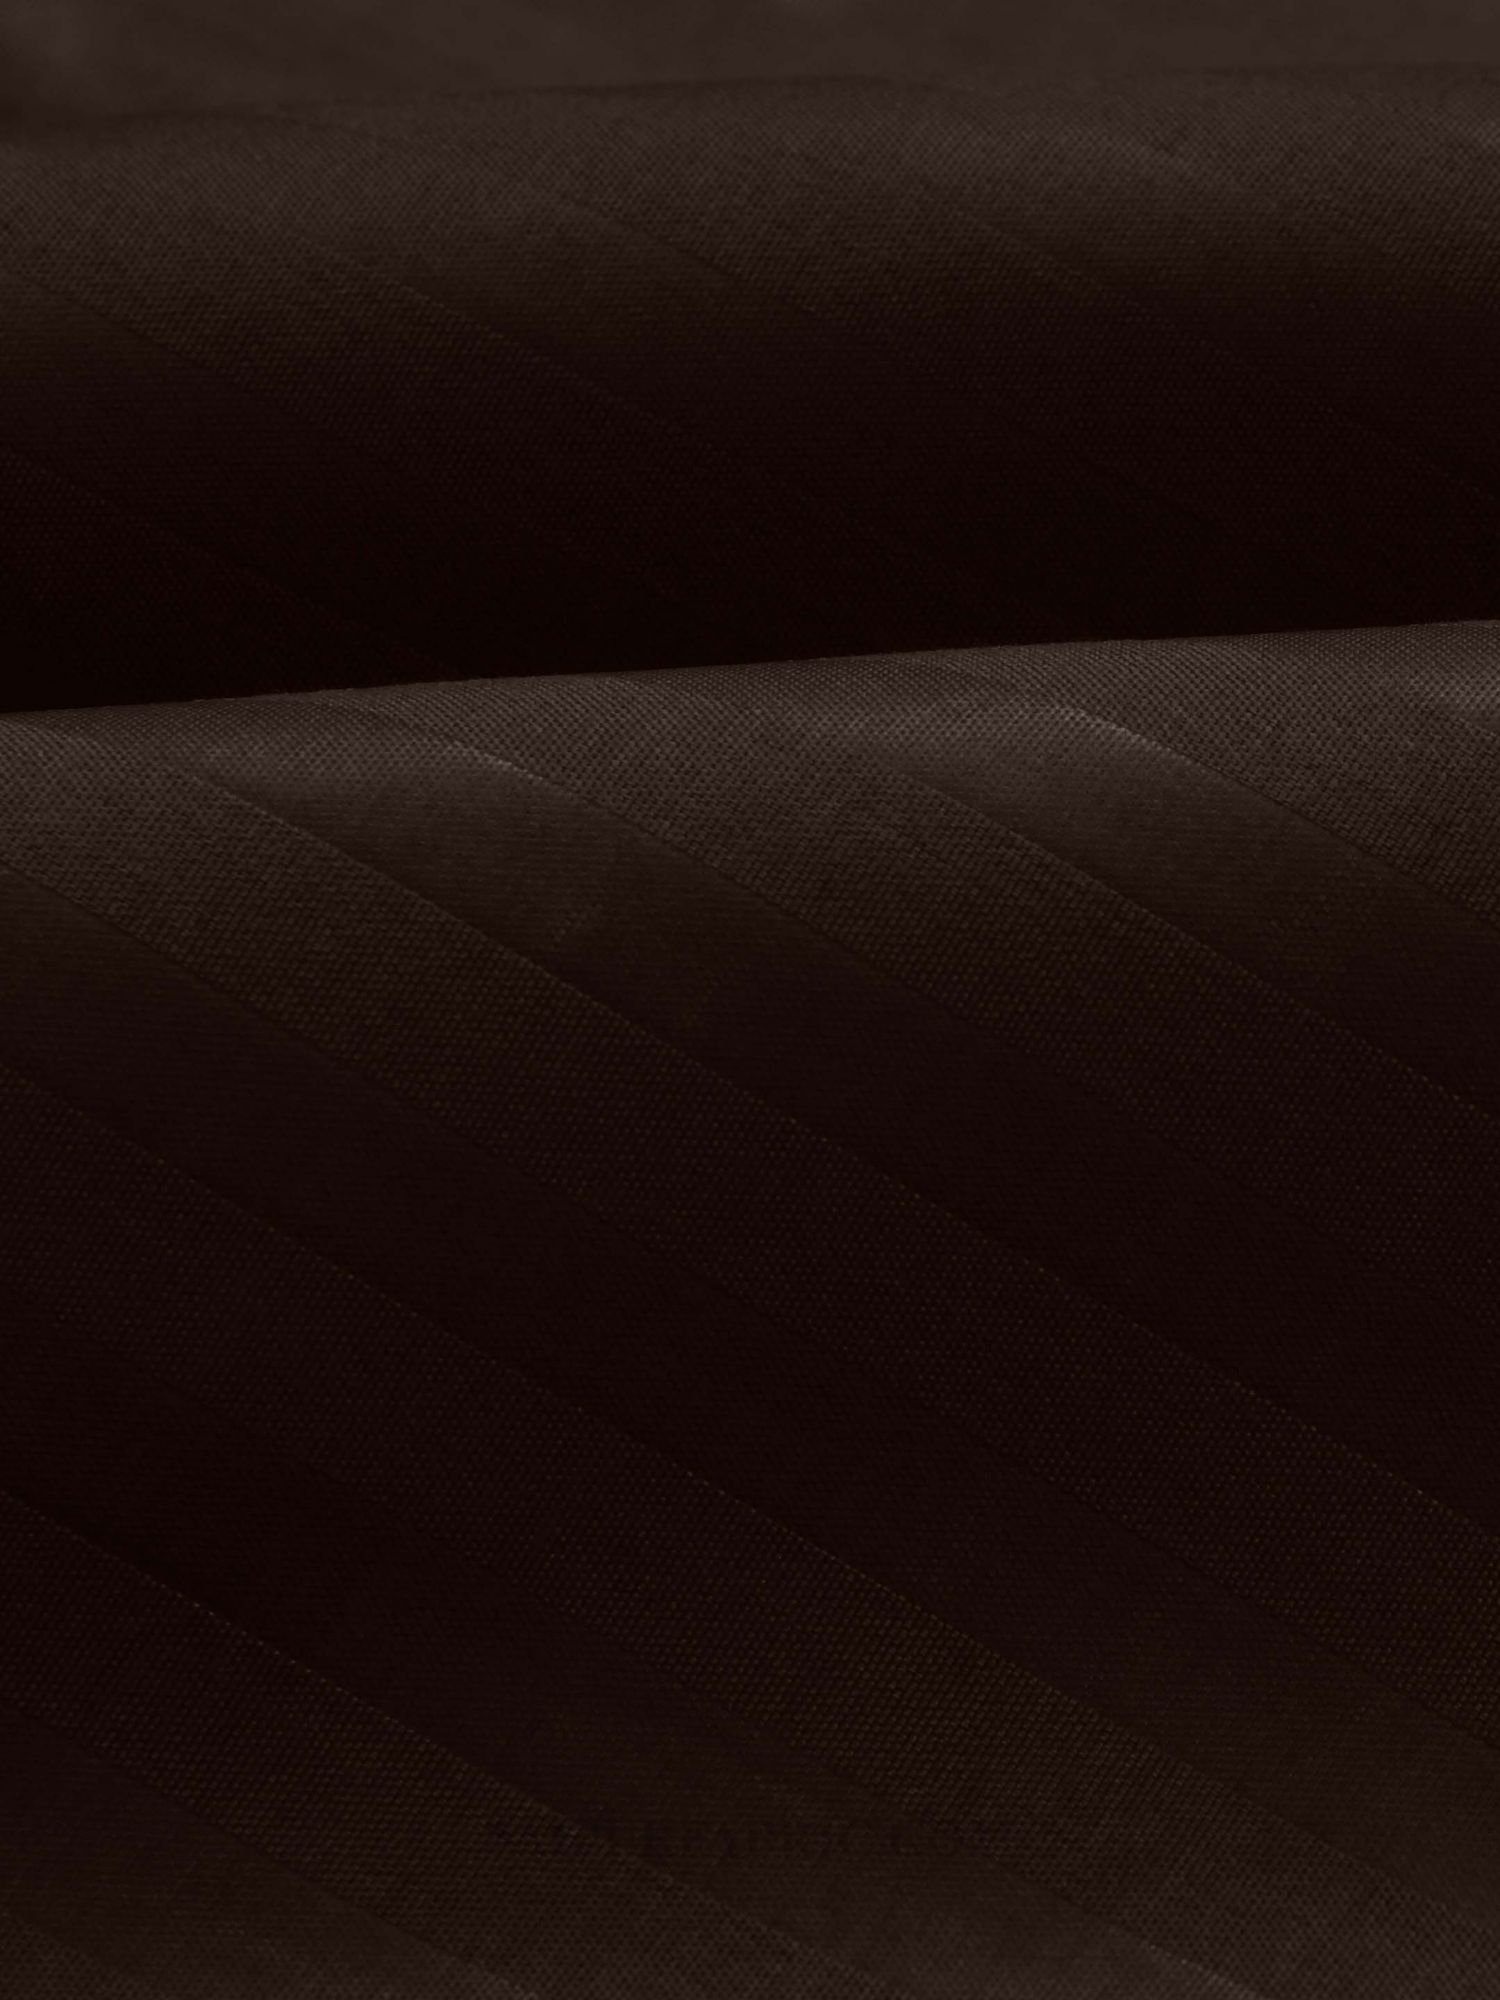 Dark Brown Satin Stripes Single BedSheet